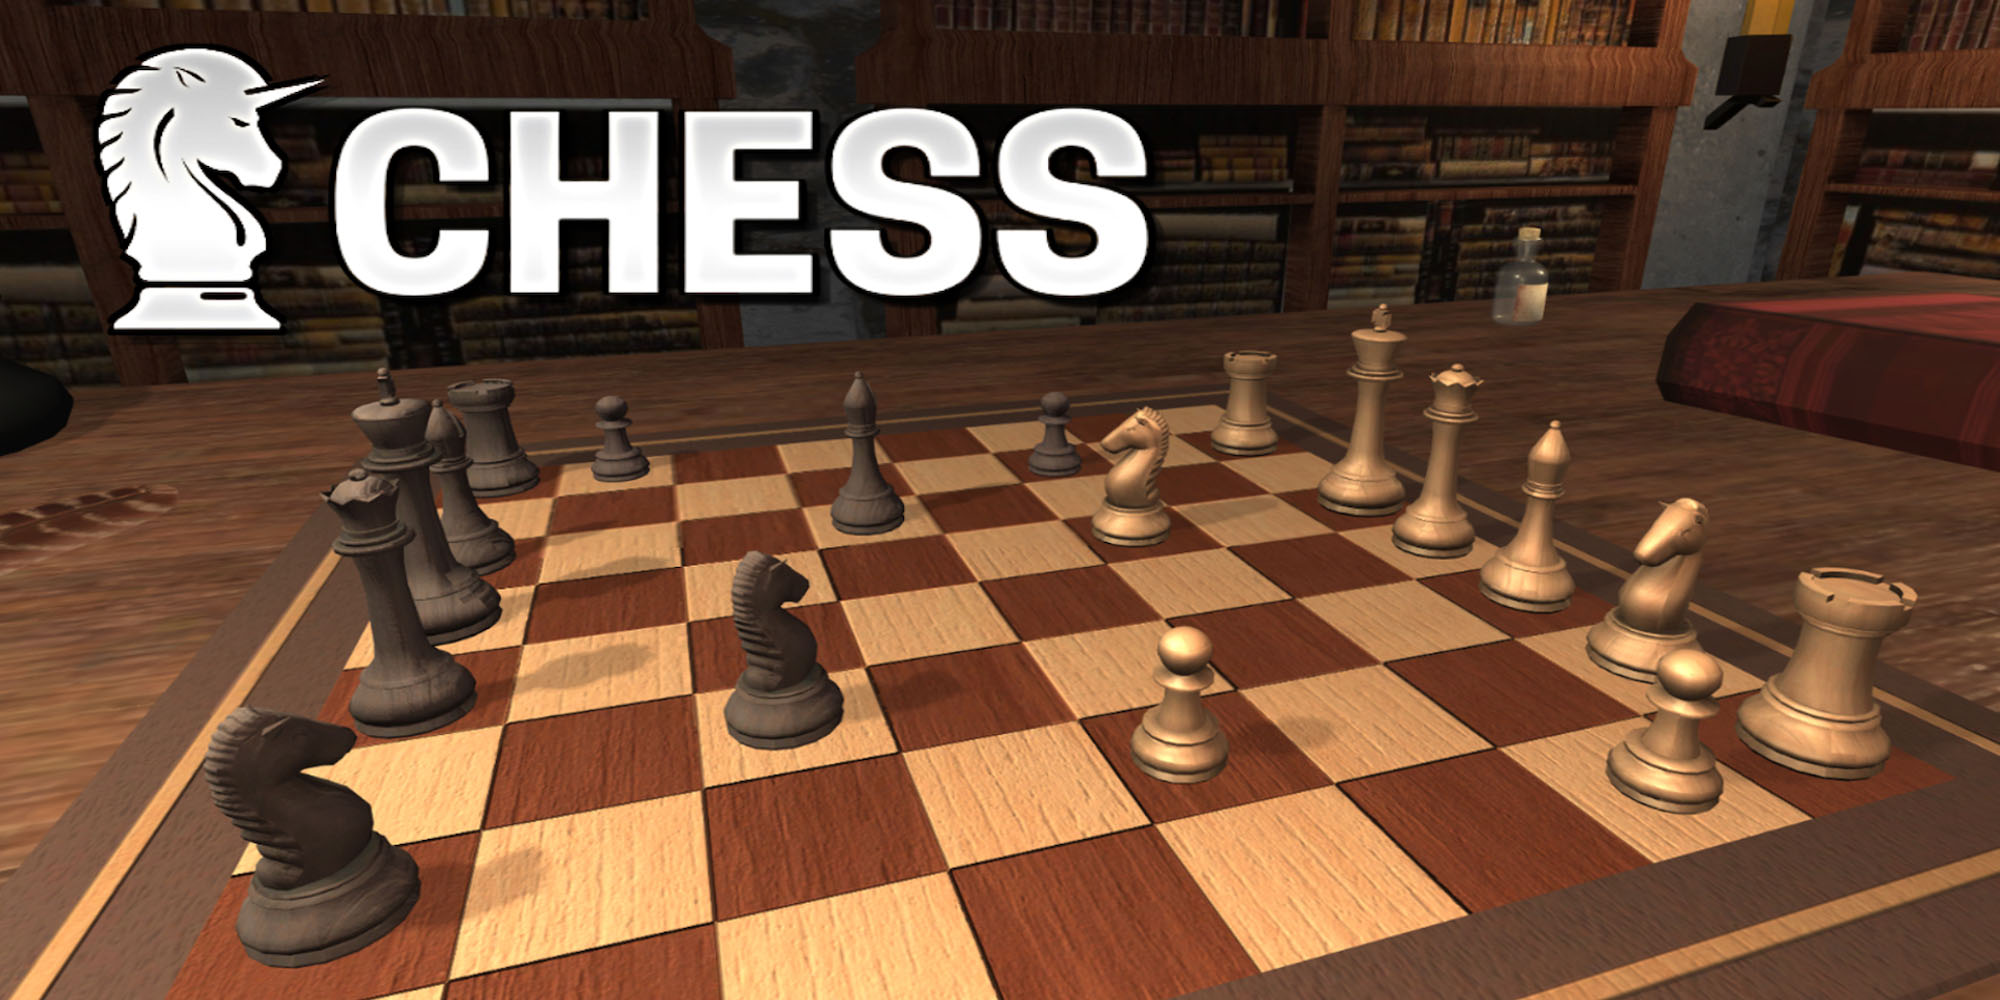 Tesoro Cooperativa Prescripción Chess | Programas descargables Nintendo Switch | Juegos | Nintendo